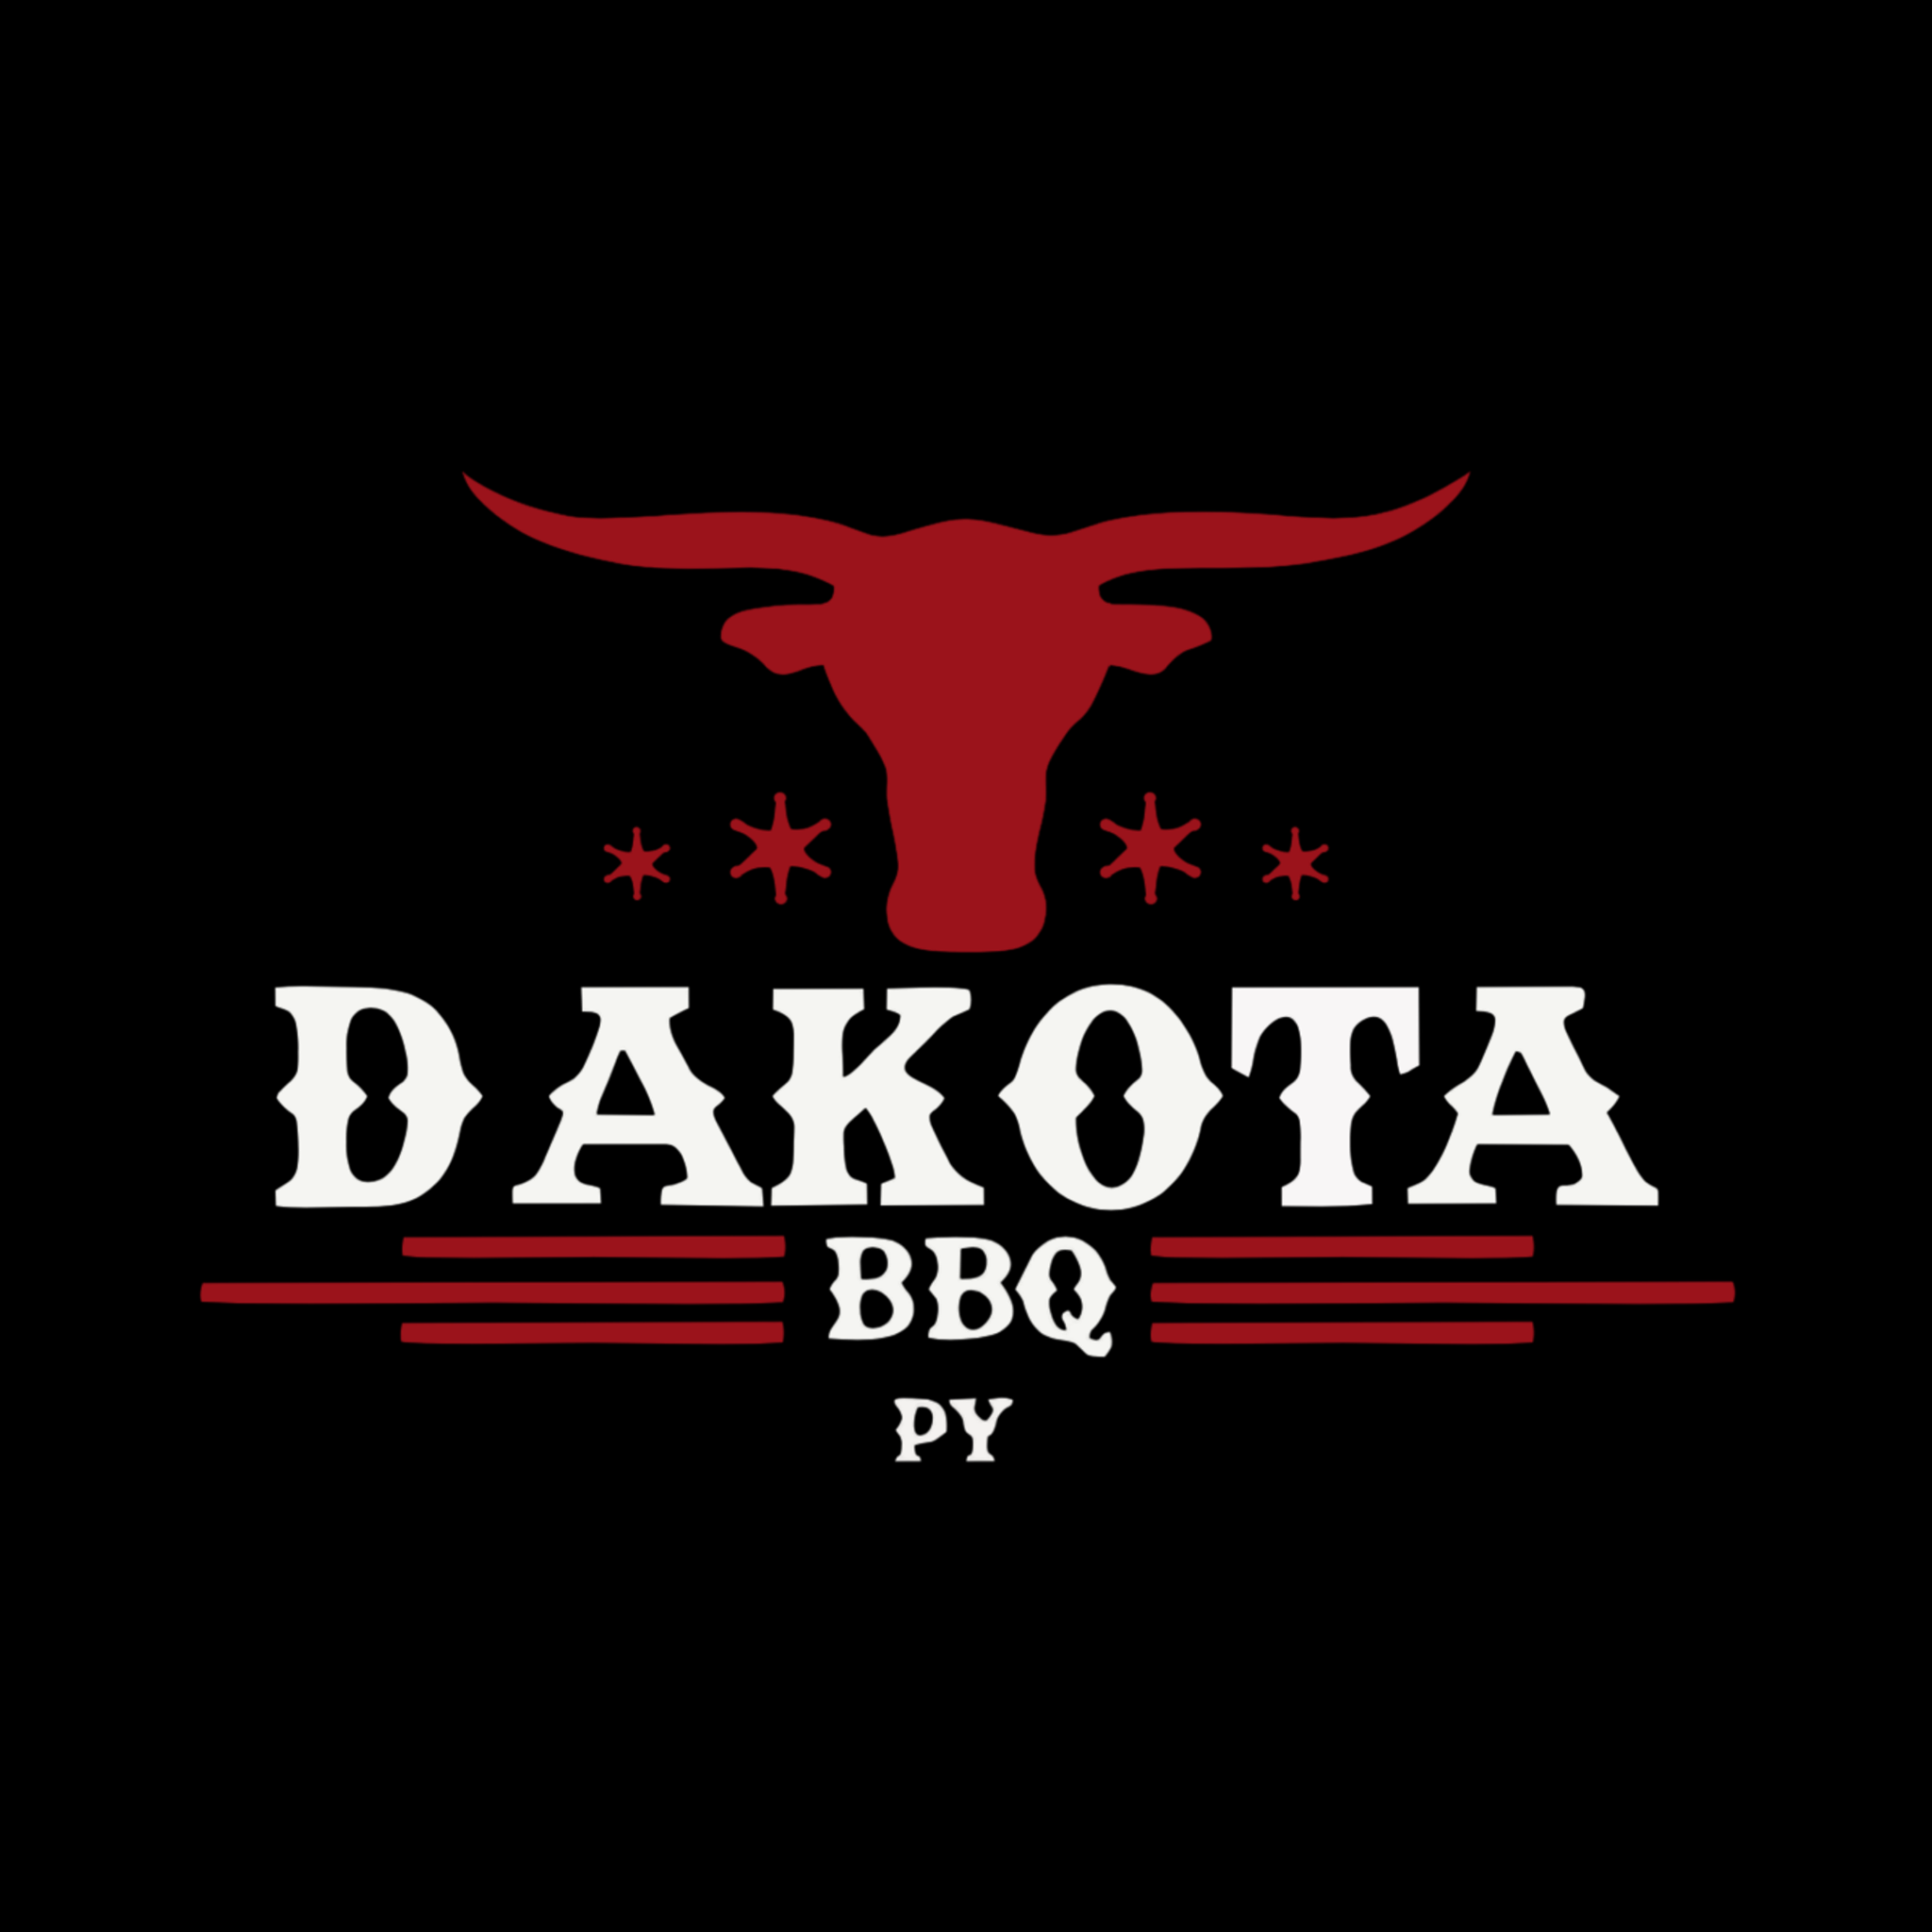 Dakota BBQ Py